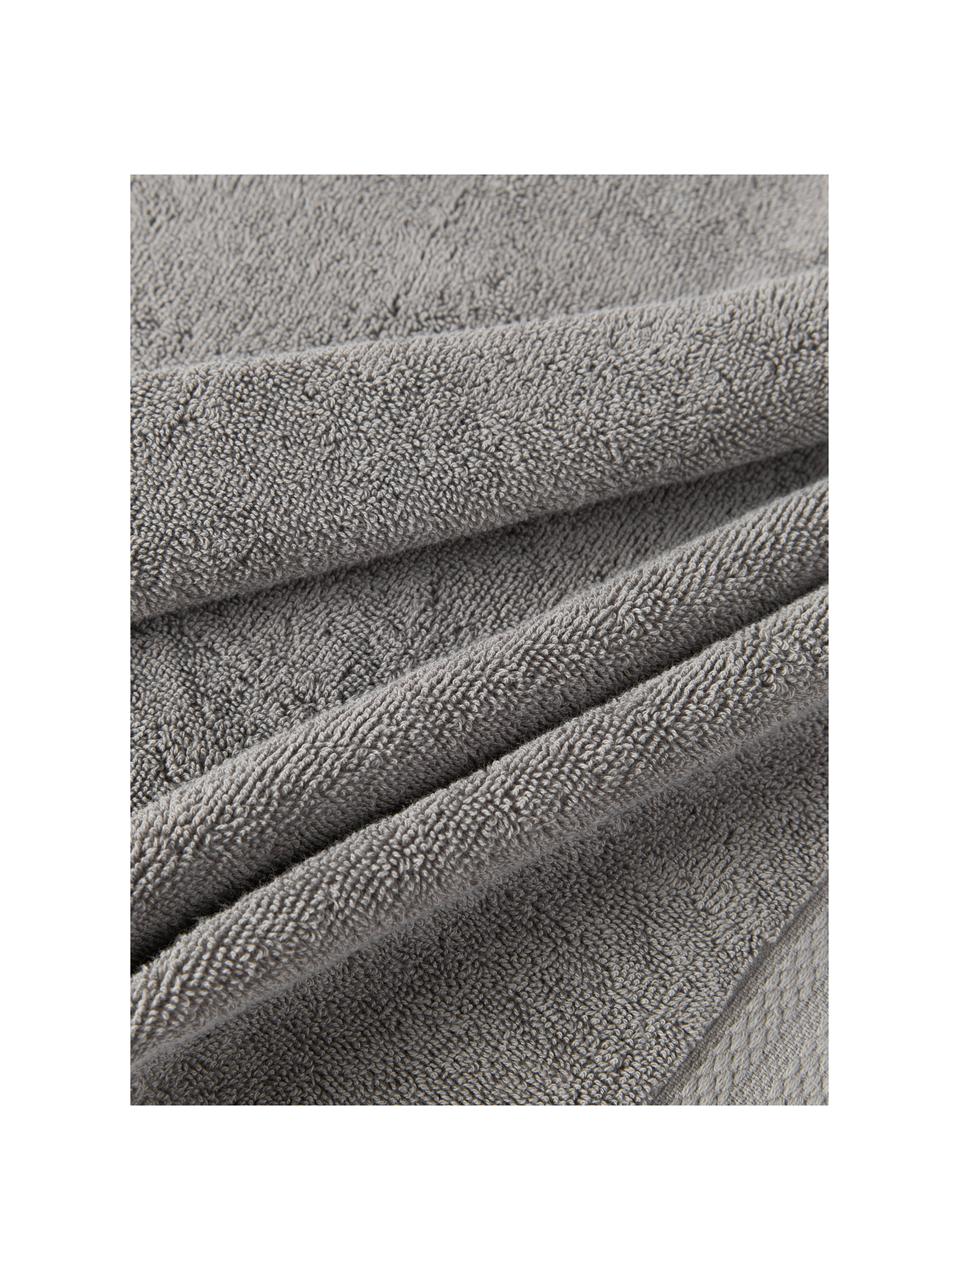 Handtuch-Set Premium aus Bio-Baumwolle, in verschiedenen Setgrössen, 100 % Bio-Baumwolle, GOTS-zertifiziert (von GCL International, GCL-300517)
Schwere Qualität, 600 g/m², Dunkelgrau, 4er-Set (Handtuch & Duschtuch)